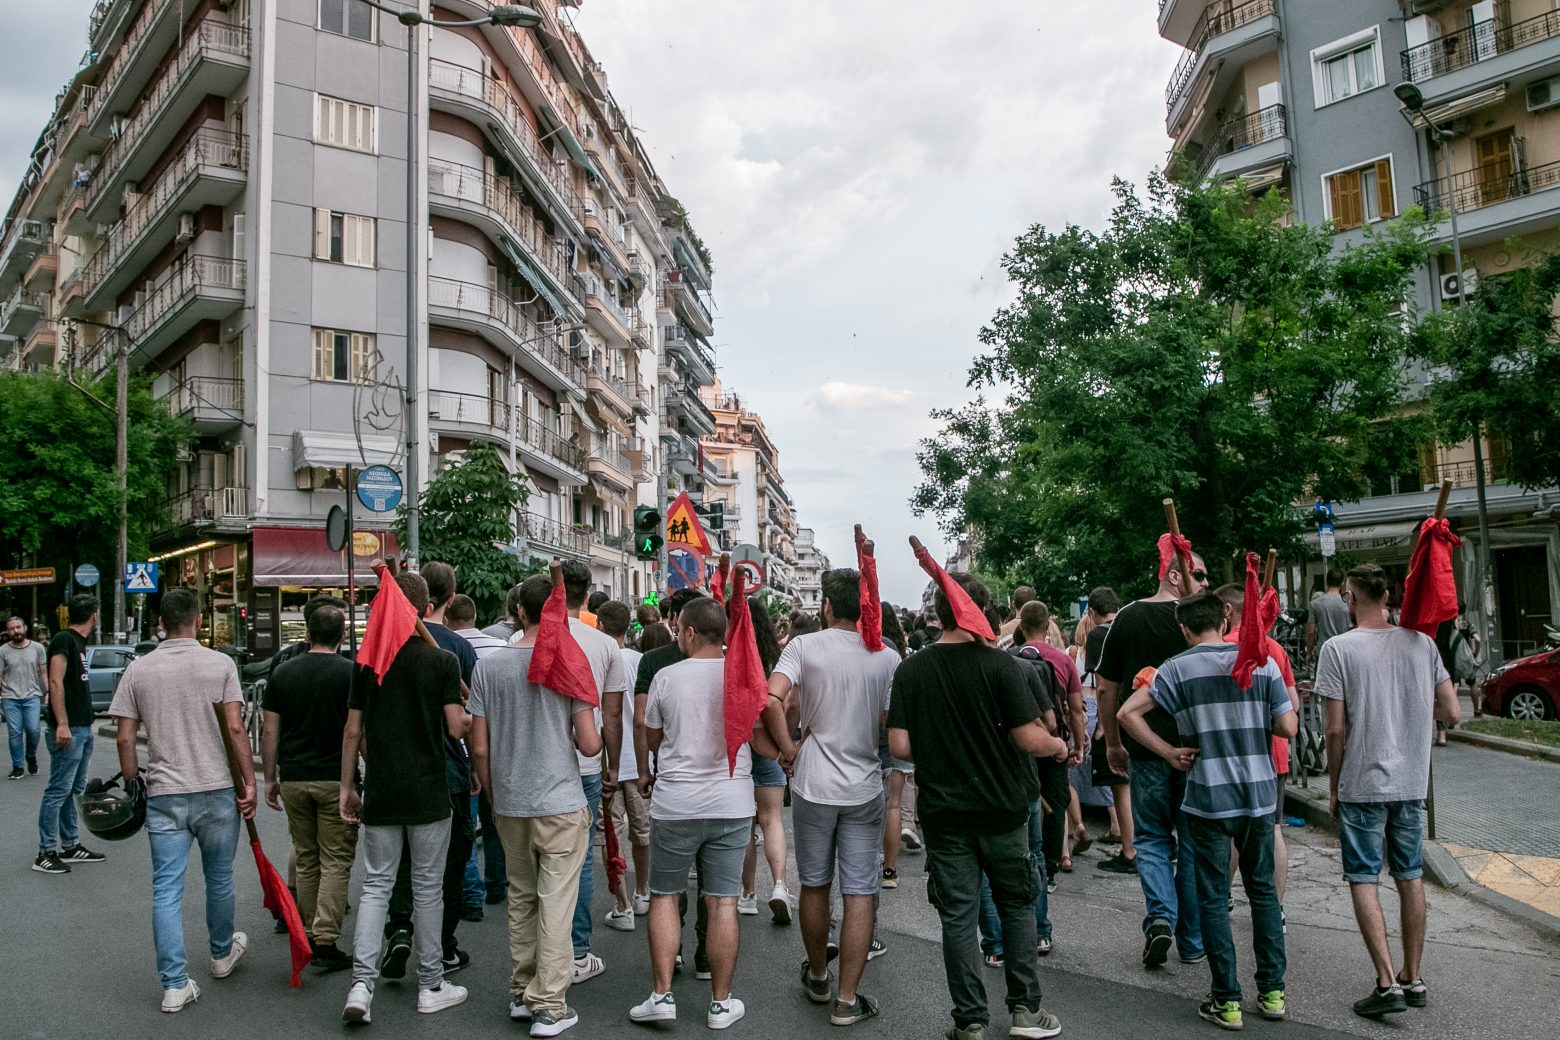 Θεσσαλονίκη: Σε συλλήψεις μετατράπηκαν δύο από τις προσαγωγές φοιτητών στο ΑΠΘ